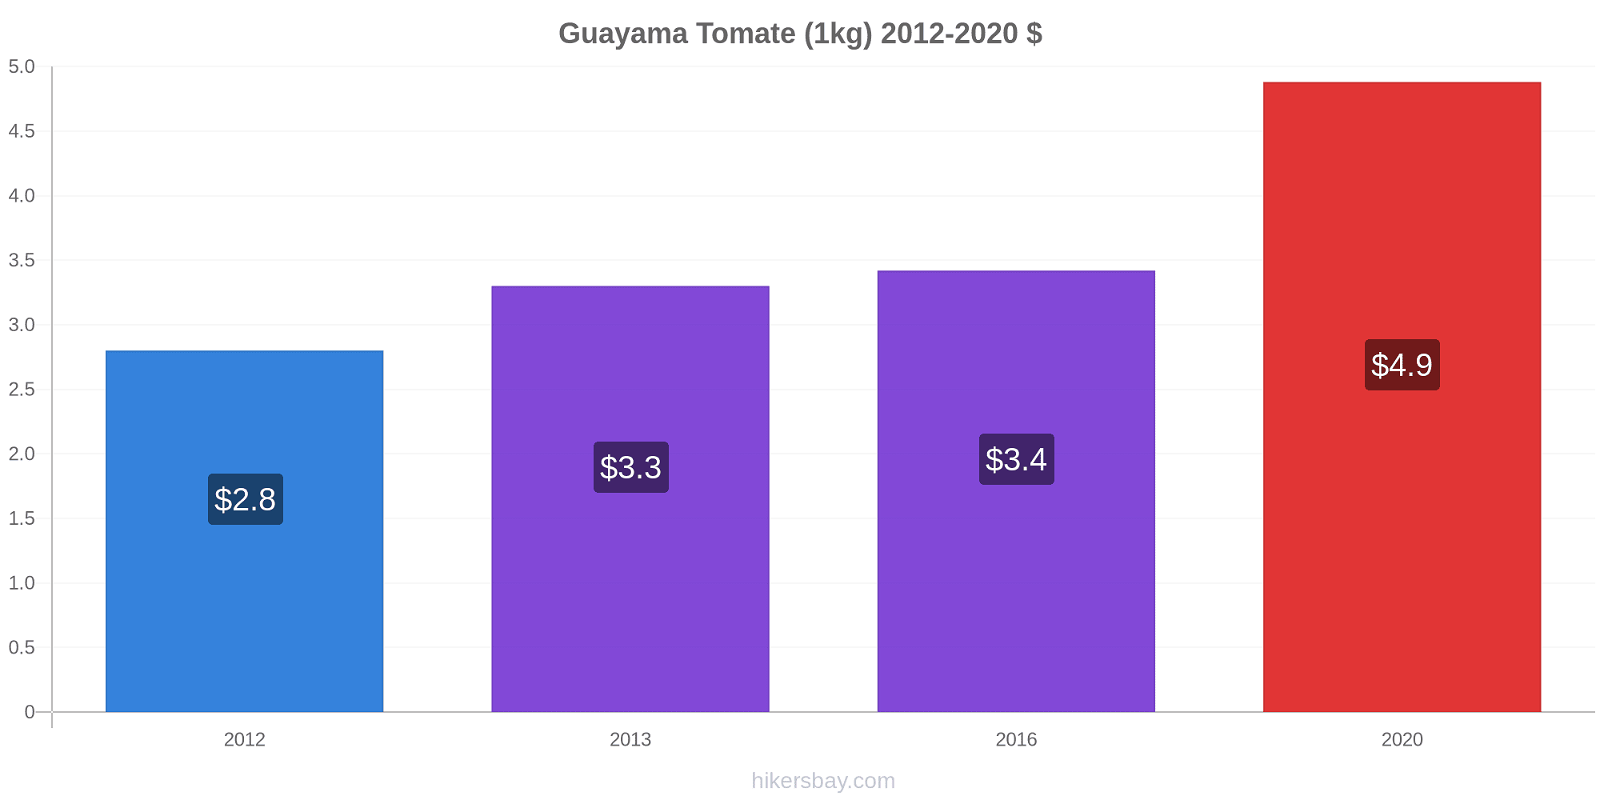 Guayama cambios de precios Tomate (1kg) hikersbay.com